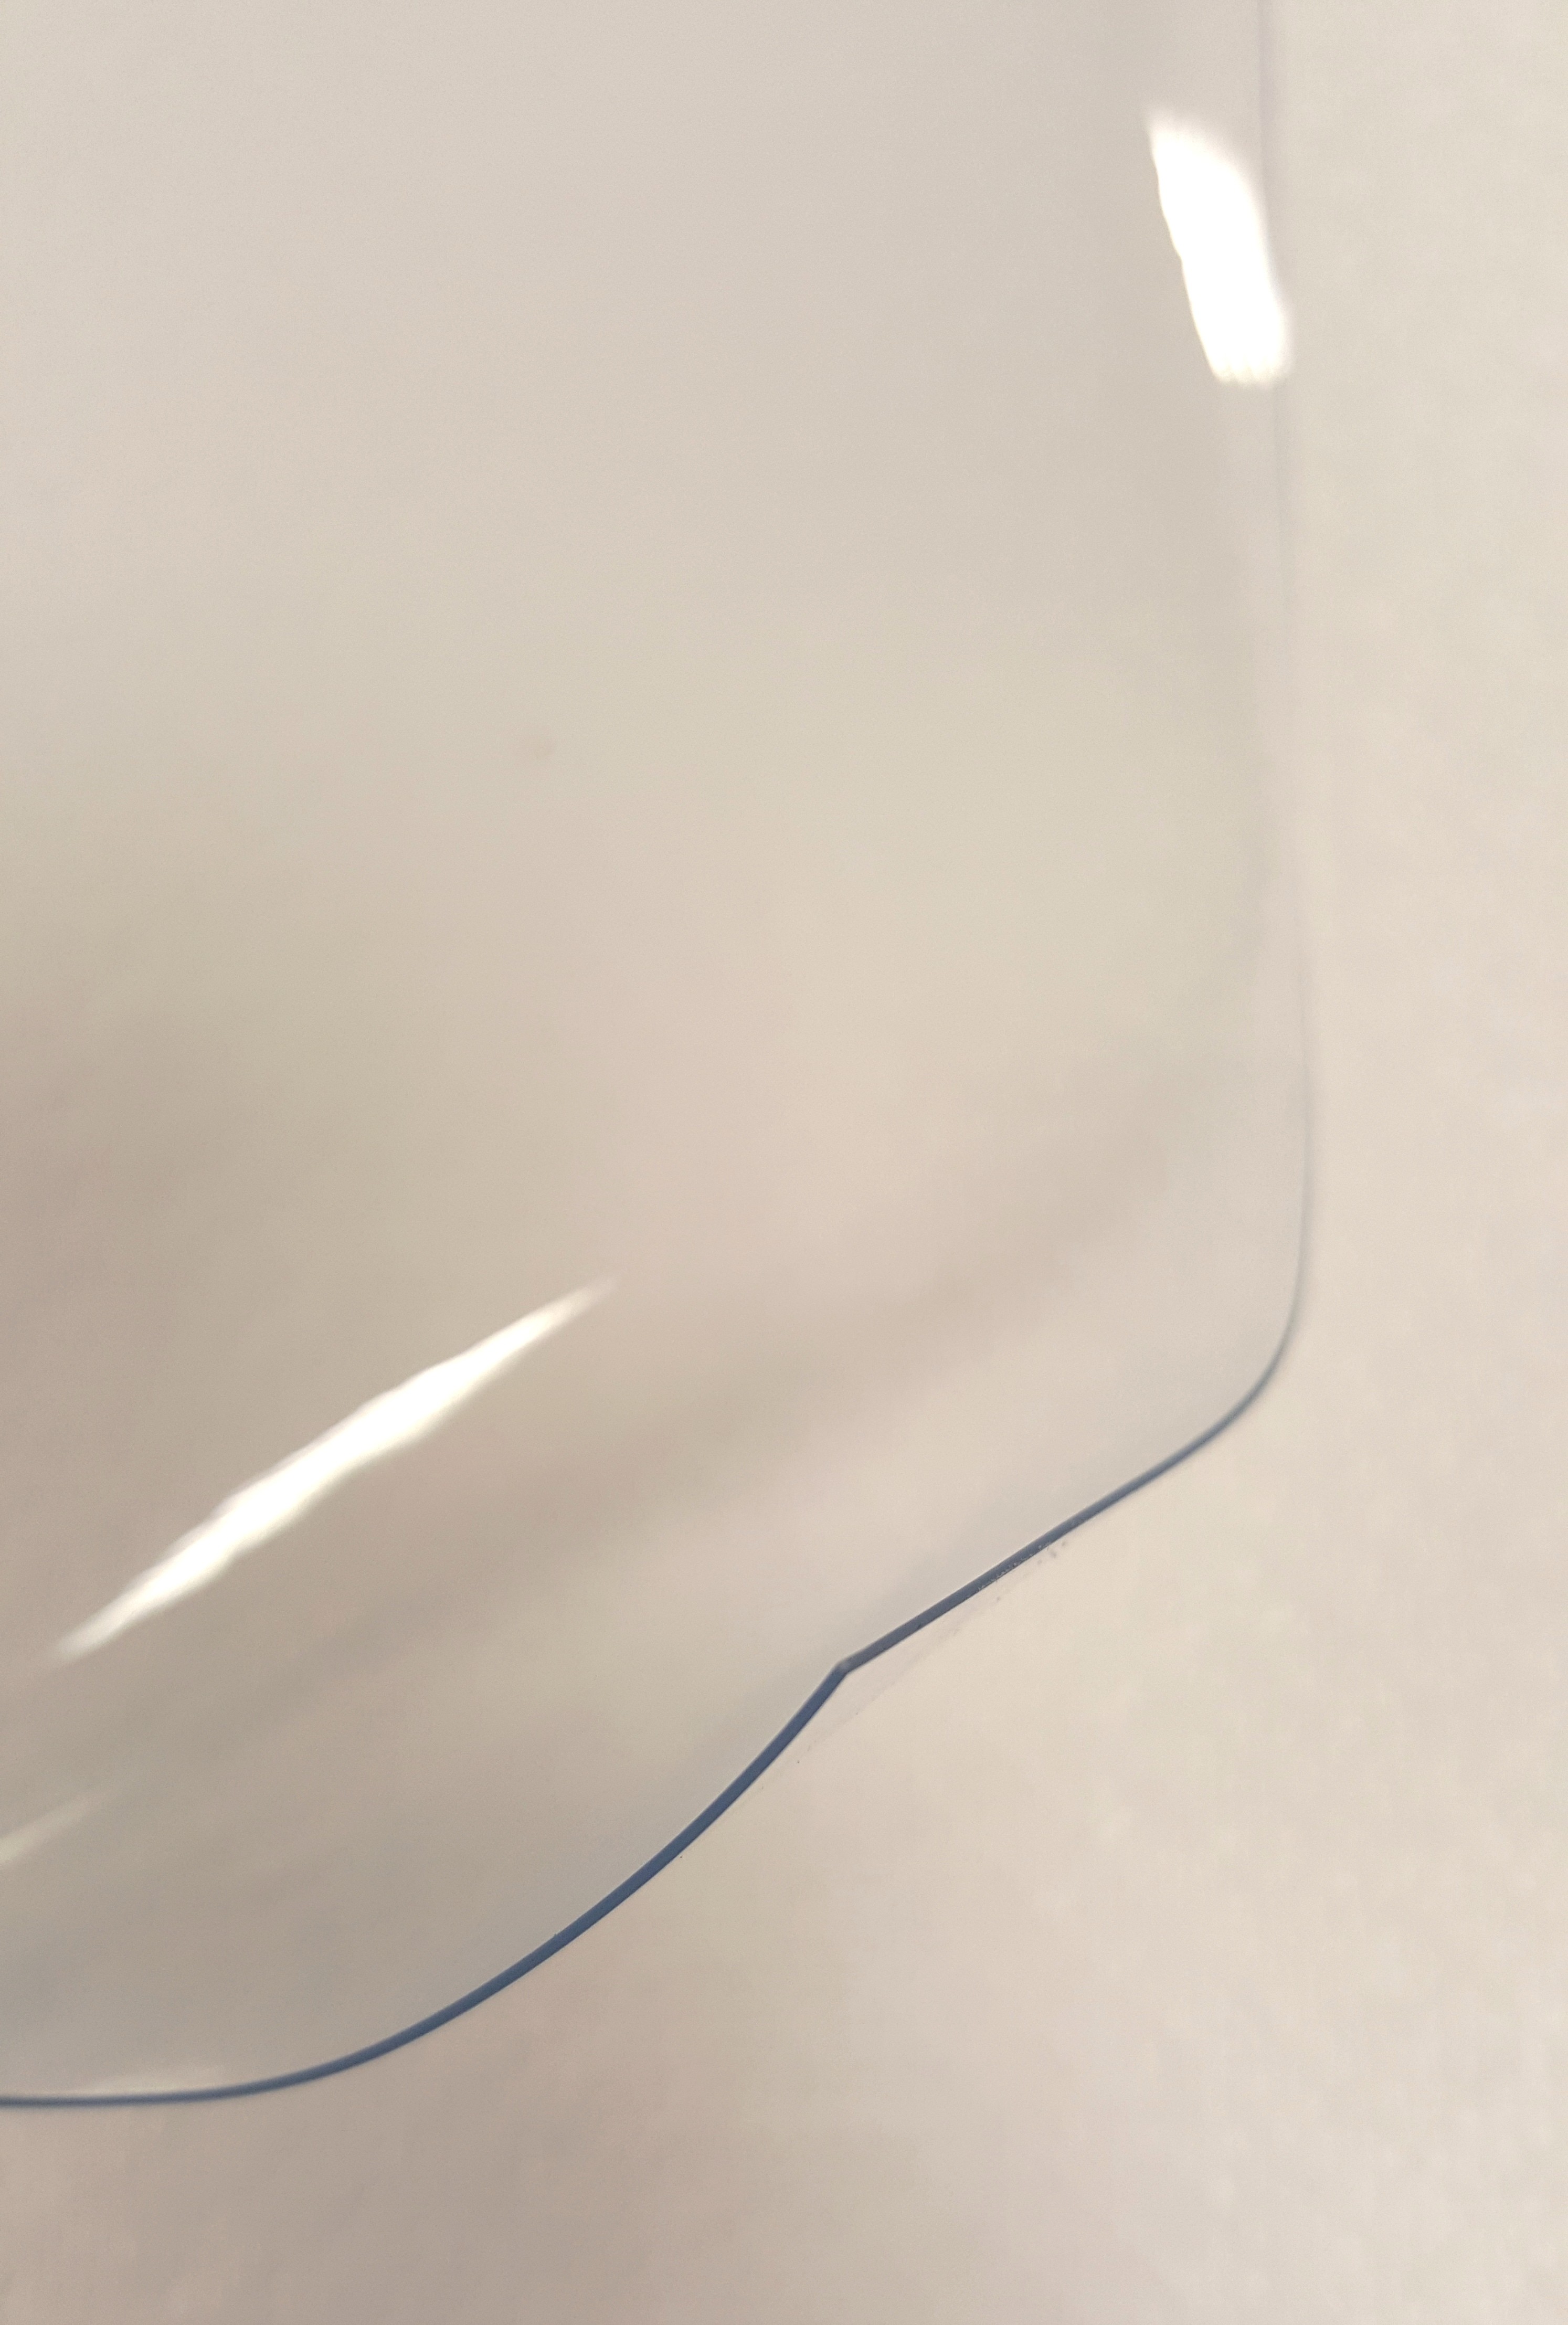 Nappe transparente épaisse rectangulaire 140 x 450 cm – 1,50 mm  d'épaisseur- cristal pvc transparent épais et rigide - livraison roulée sur  tube - Conforama